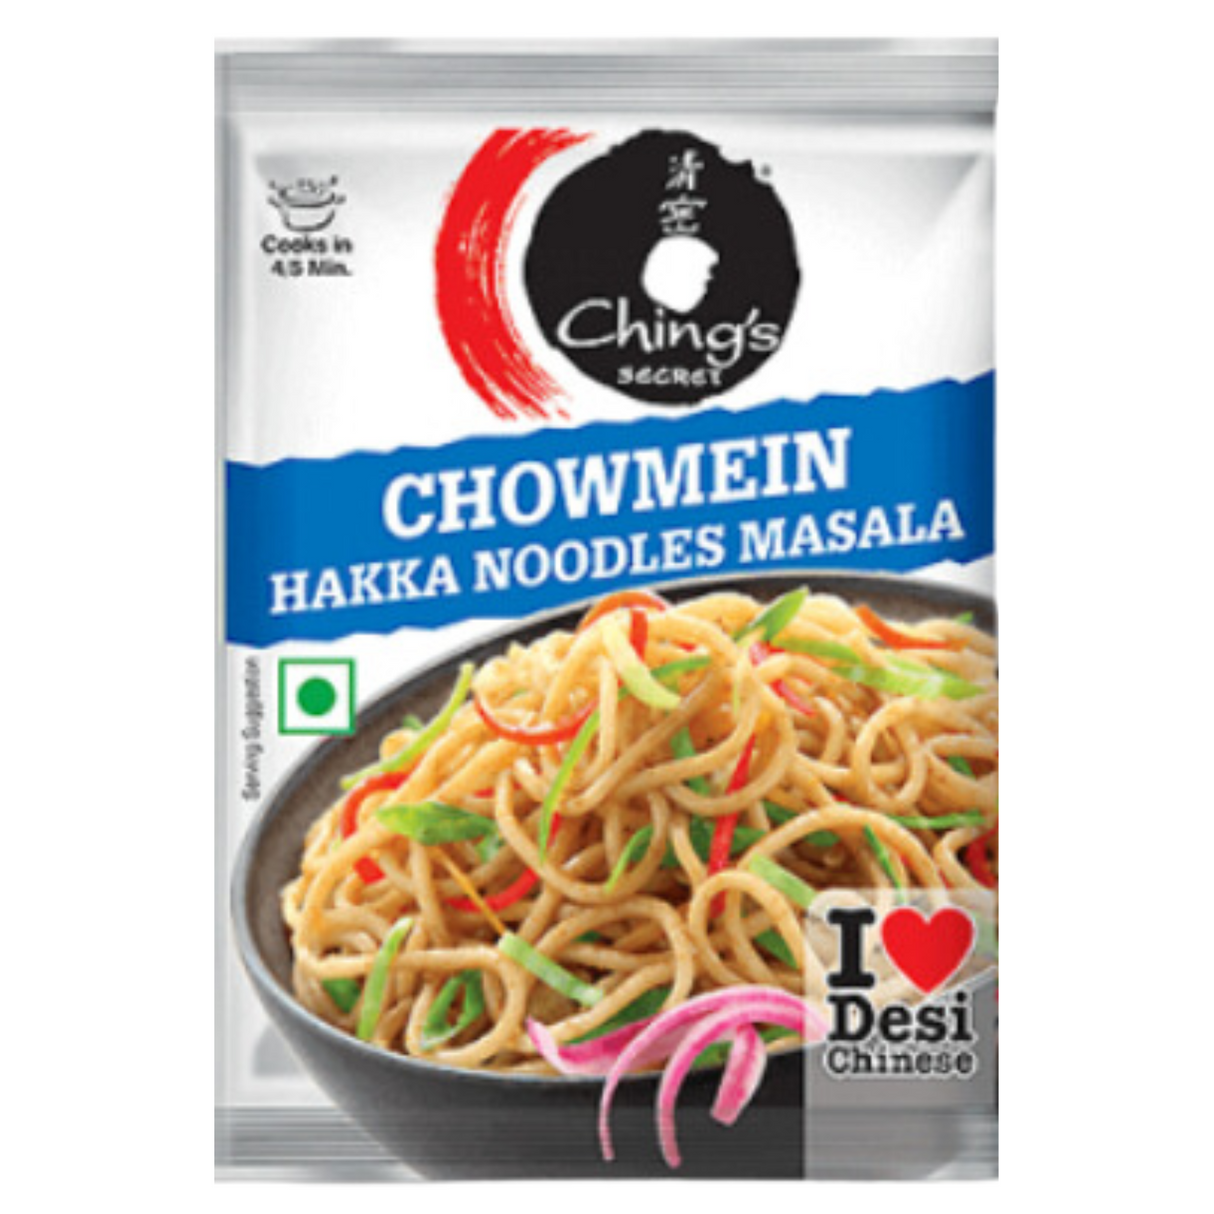 Chings Chowmein Hakka Noodle Masala